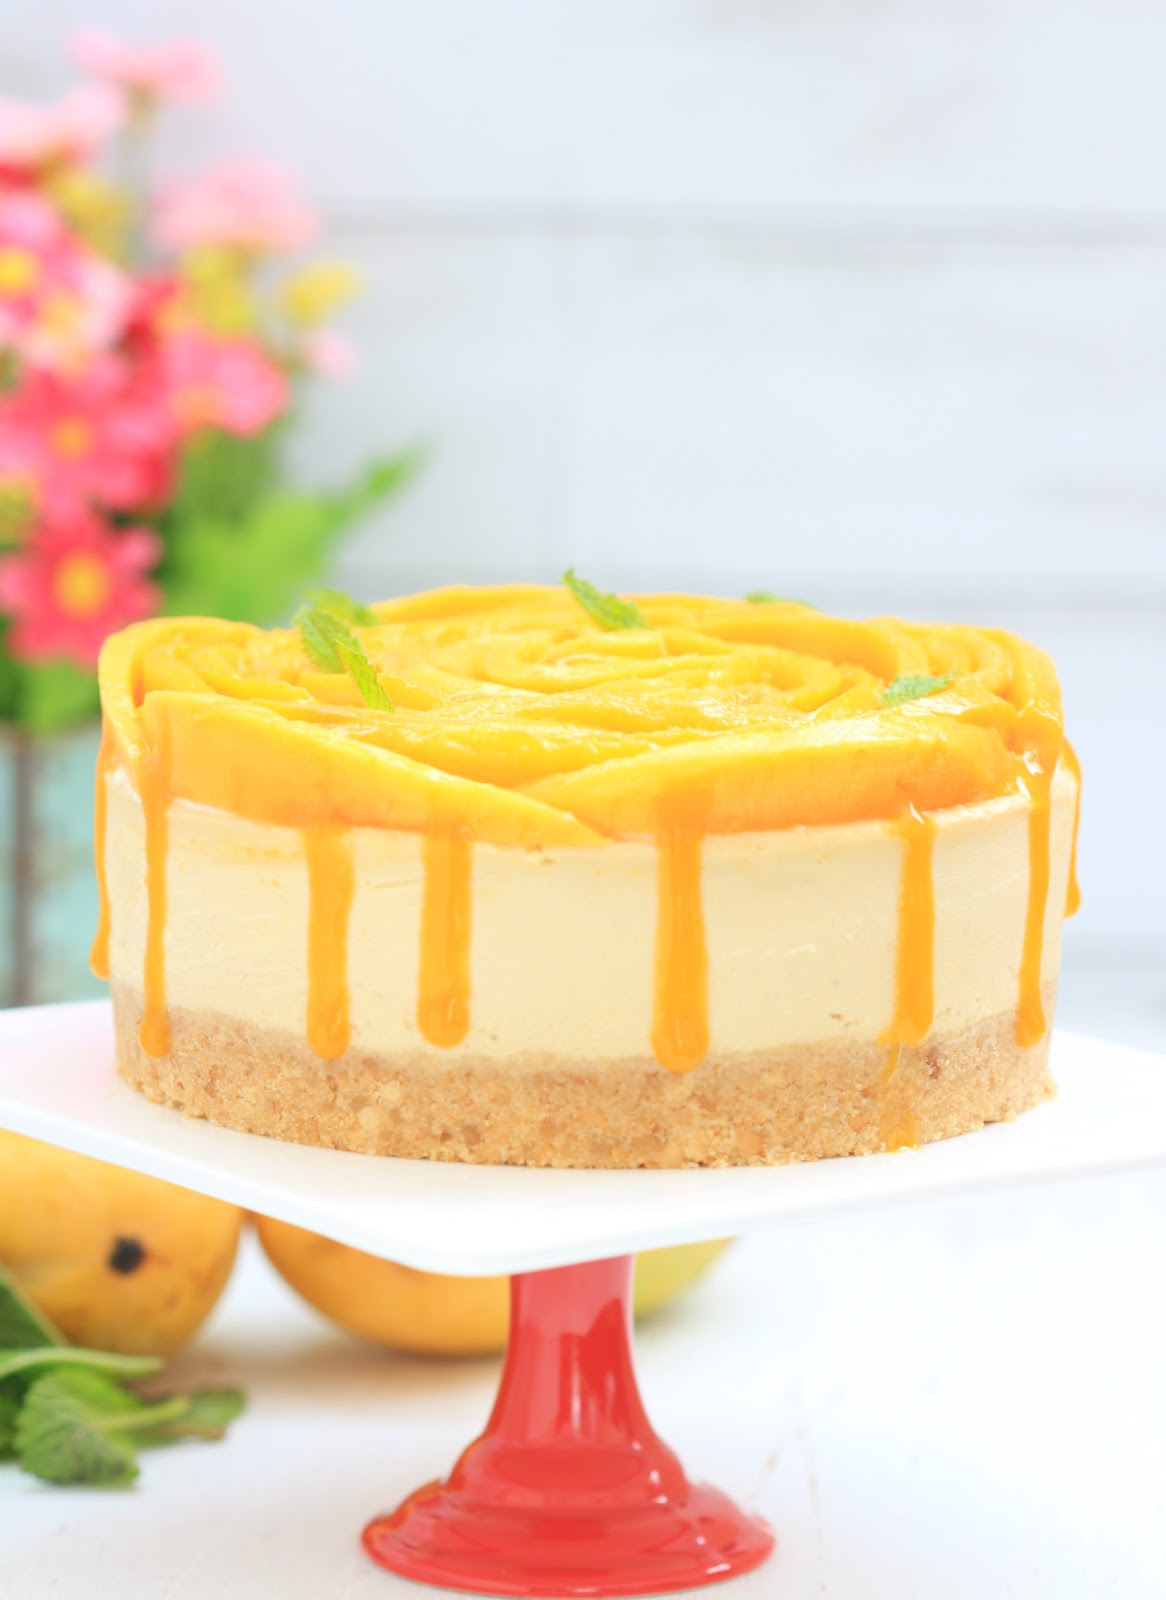 Baked mango cheesecake